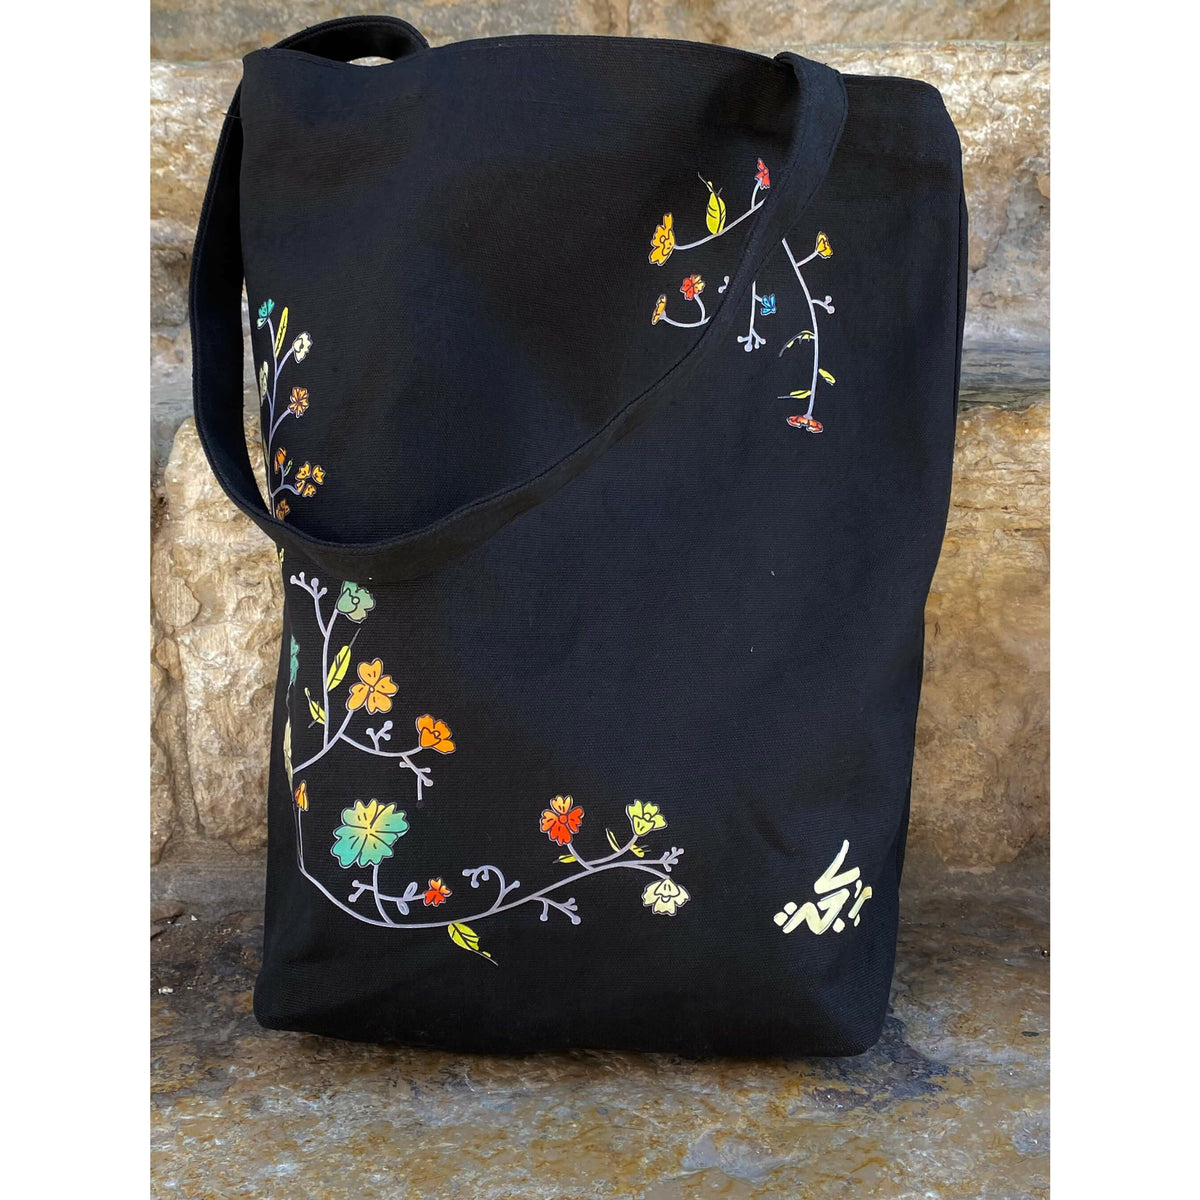 Vintage Flowers Black Tote Bag